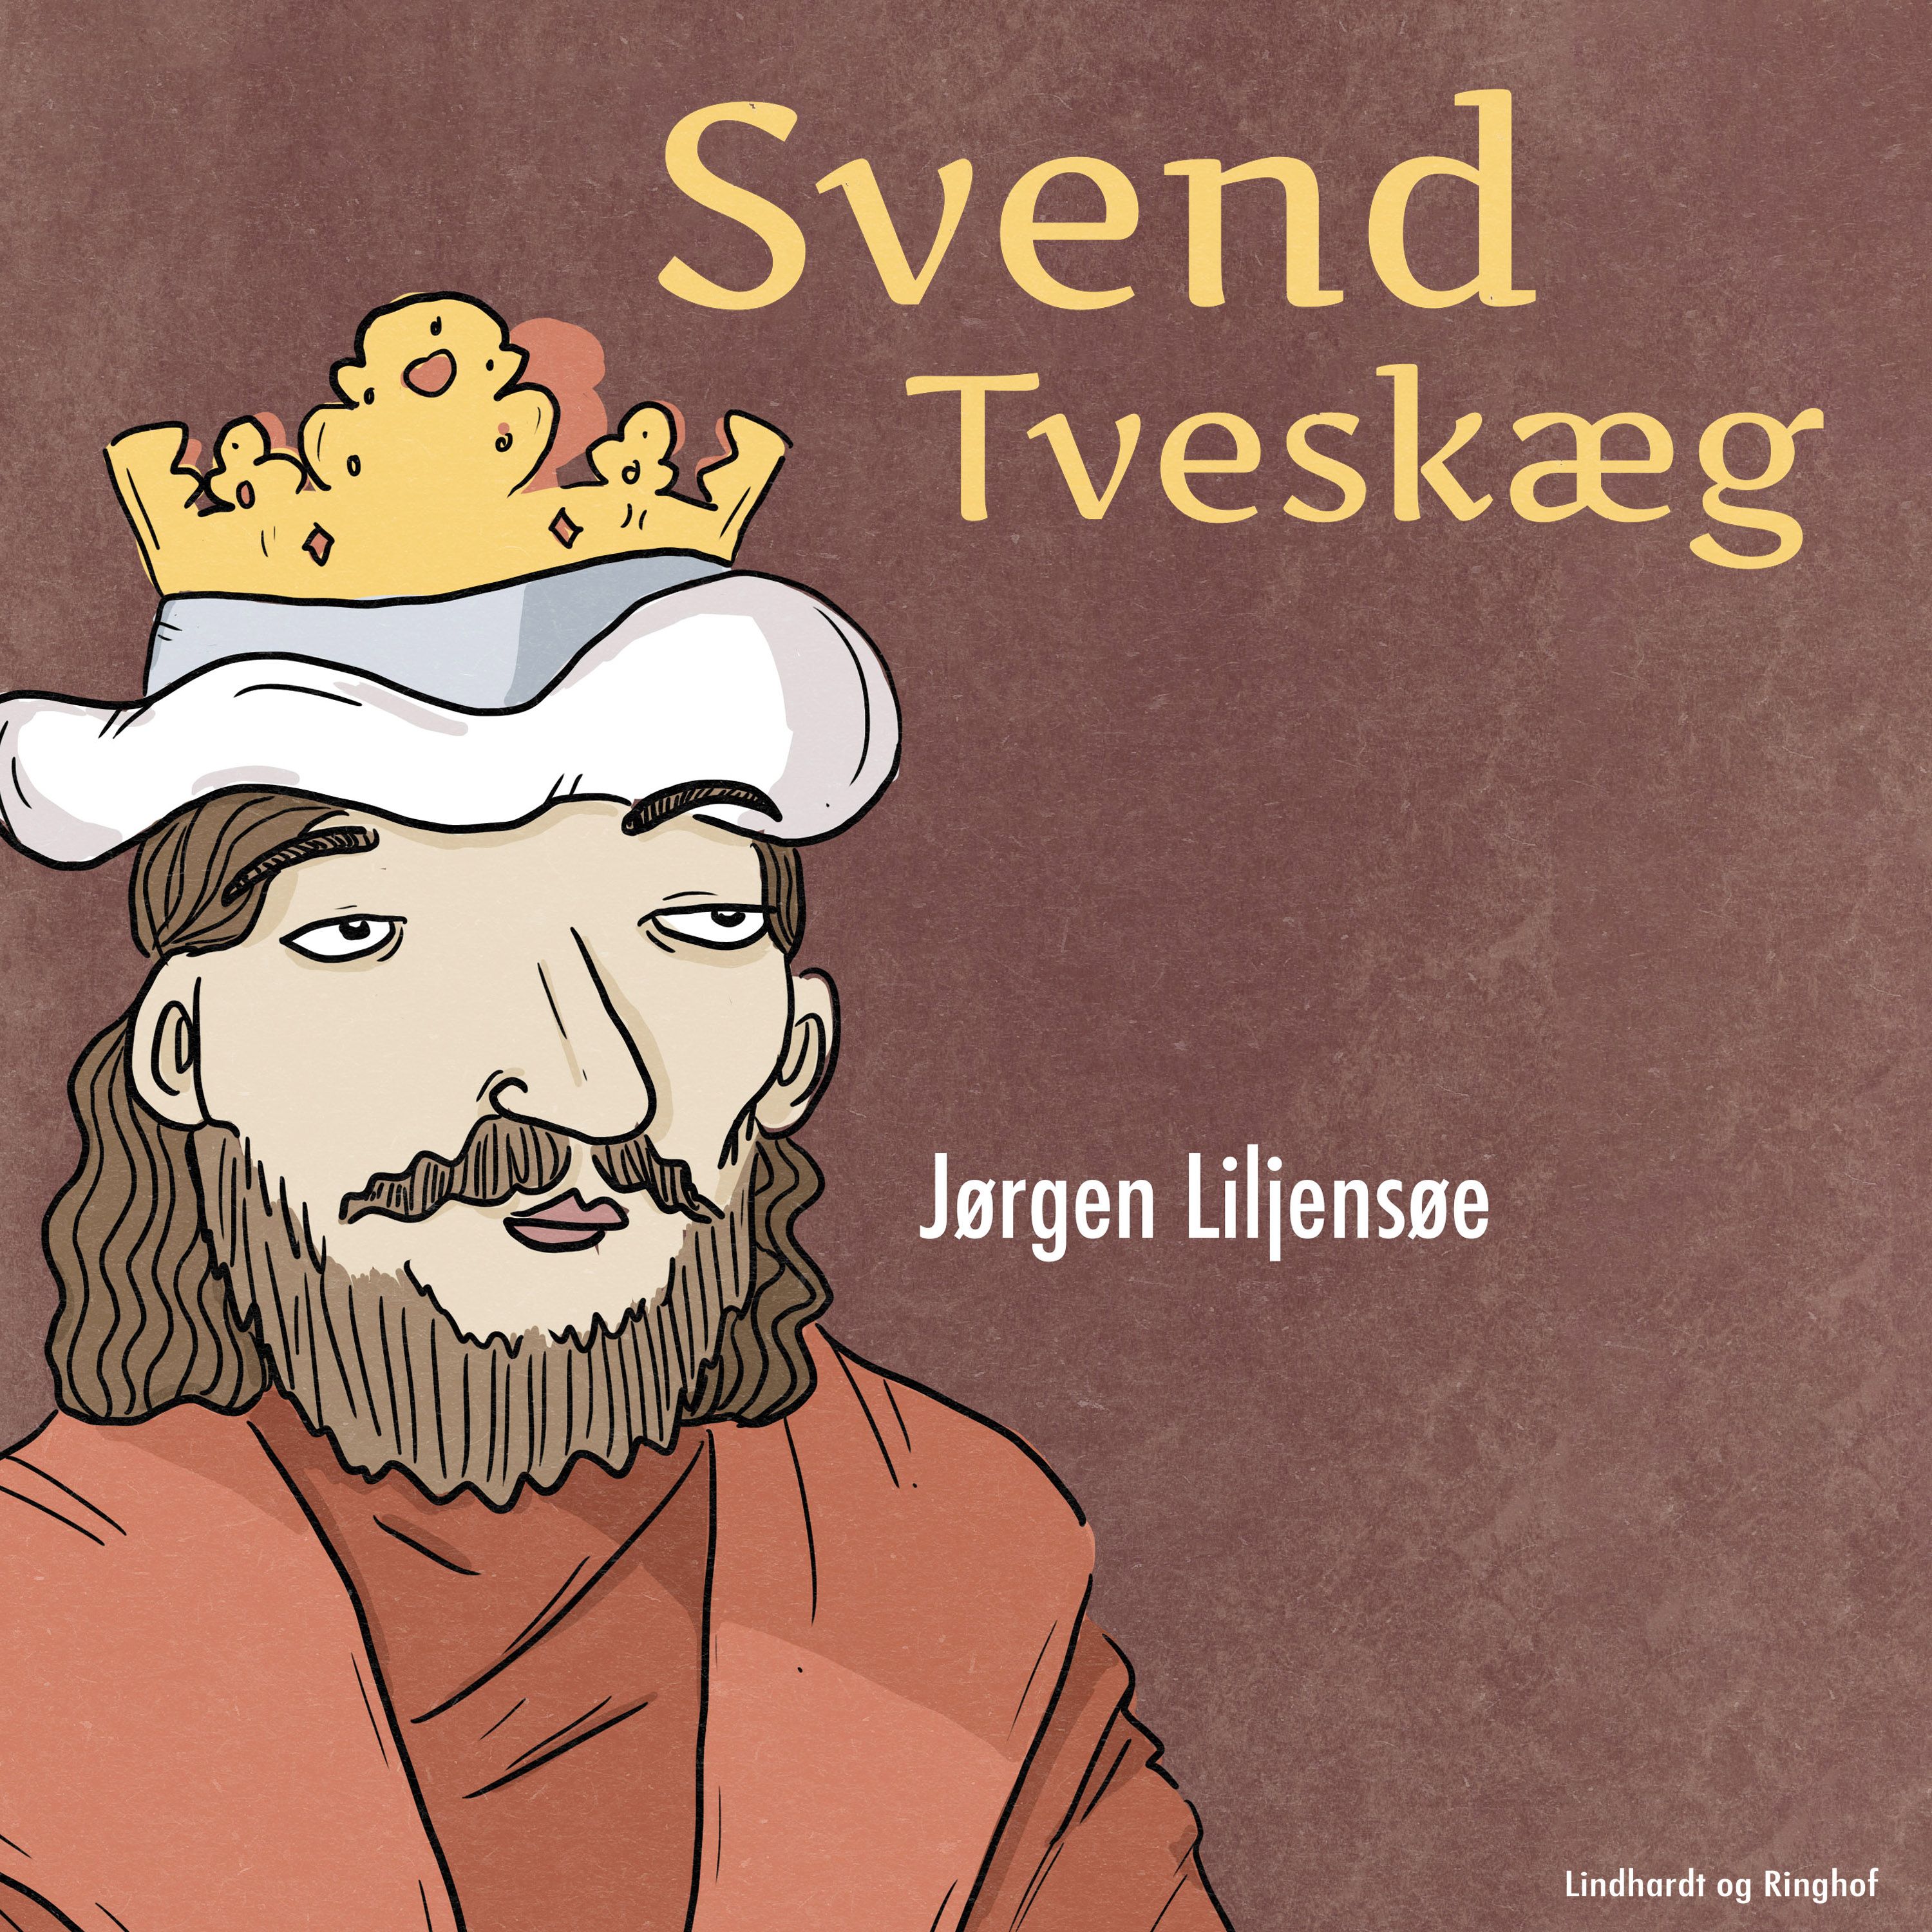 Svend Tveskæg, ljudbok av Jørgen Liljensøe